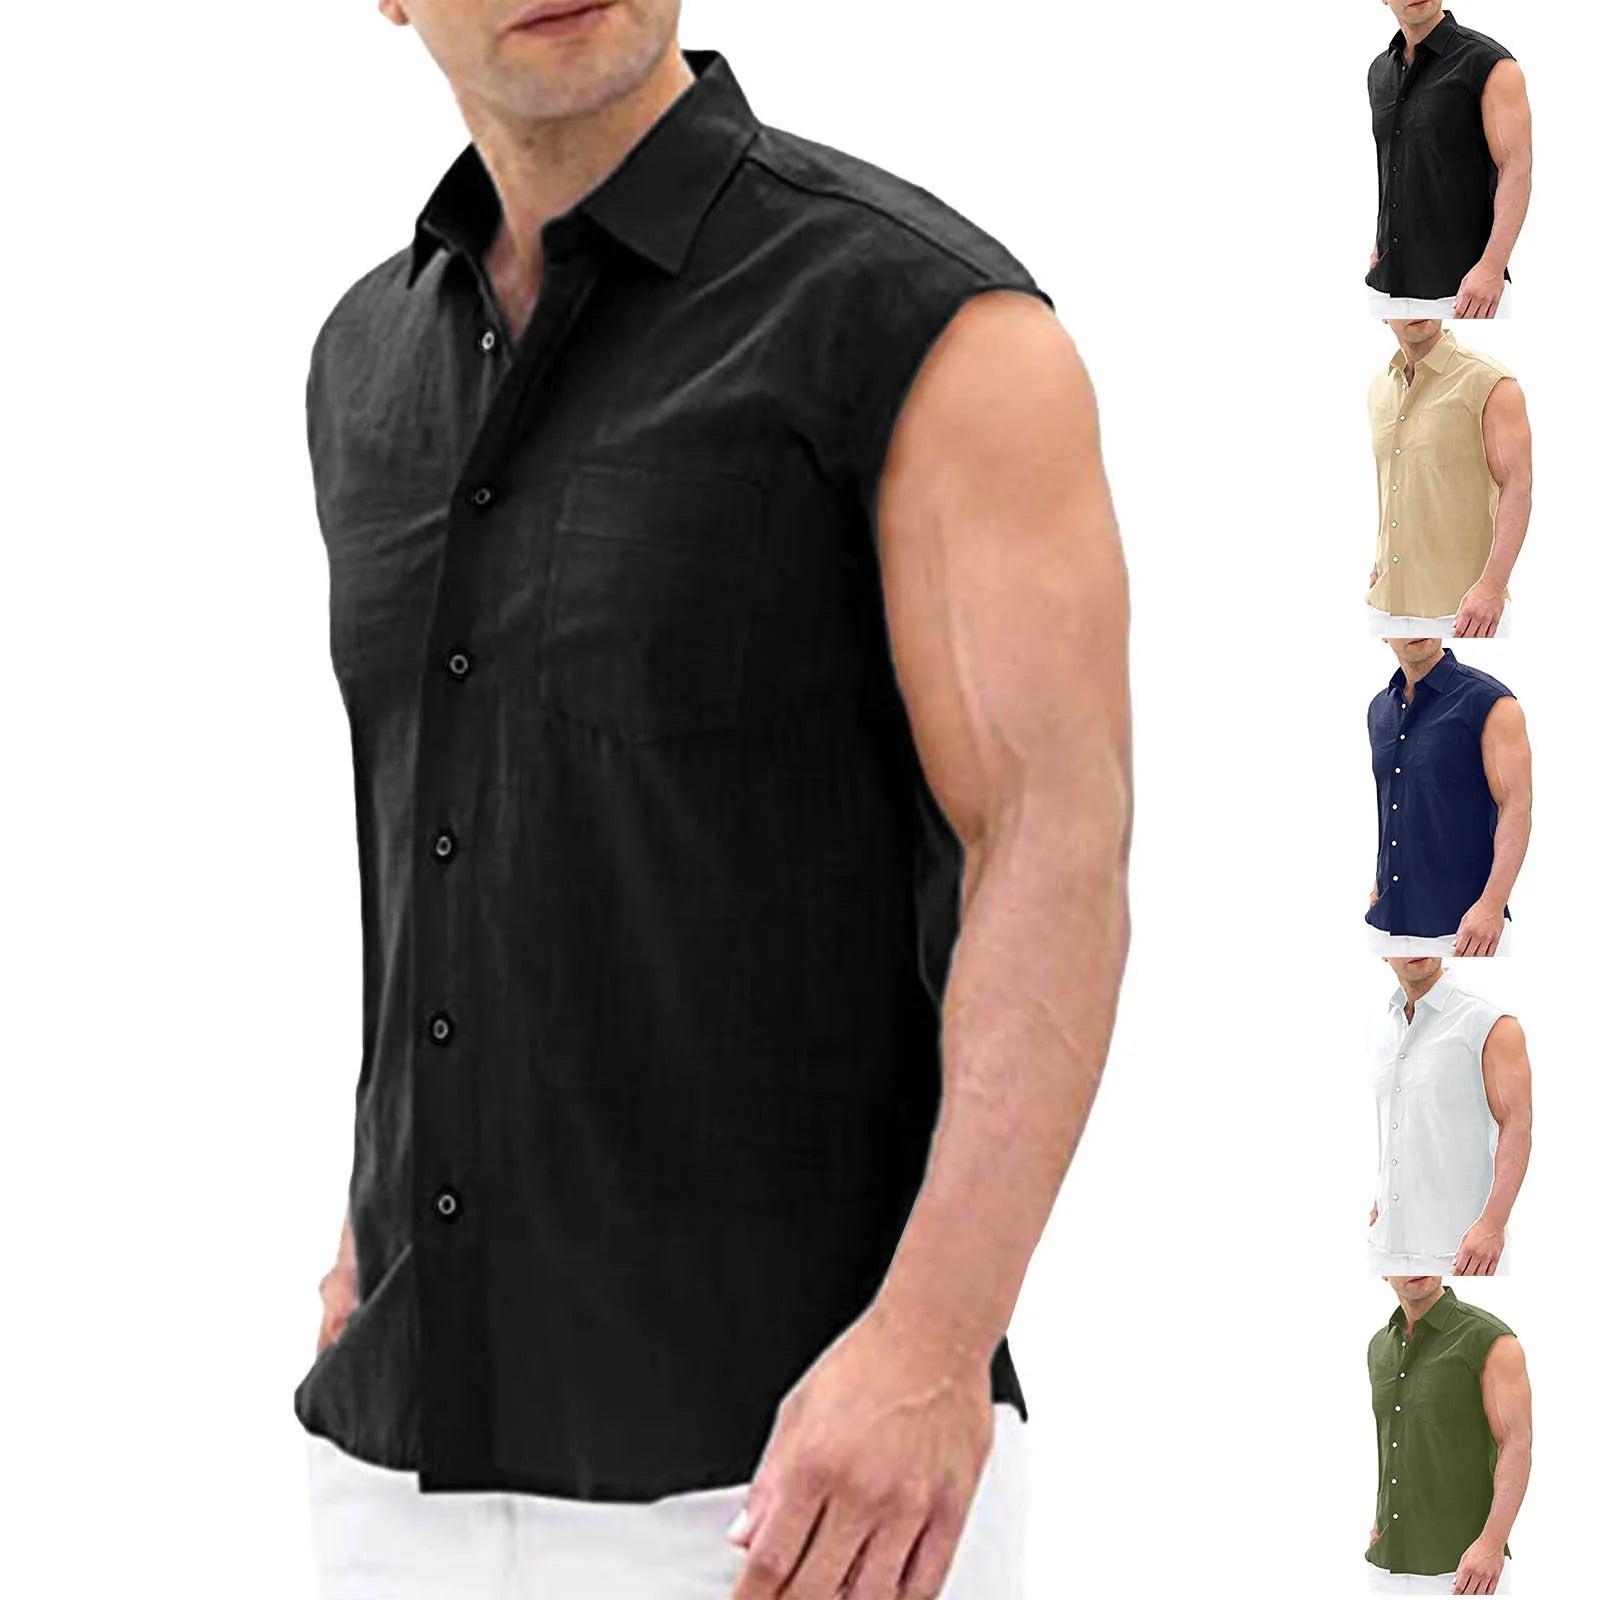 Sleeveless T-Shirt For Men Men's Fashion Casual Cardigan Casual Fashion Lapel Sleeveless top